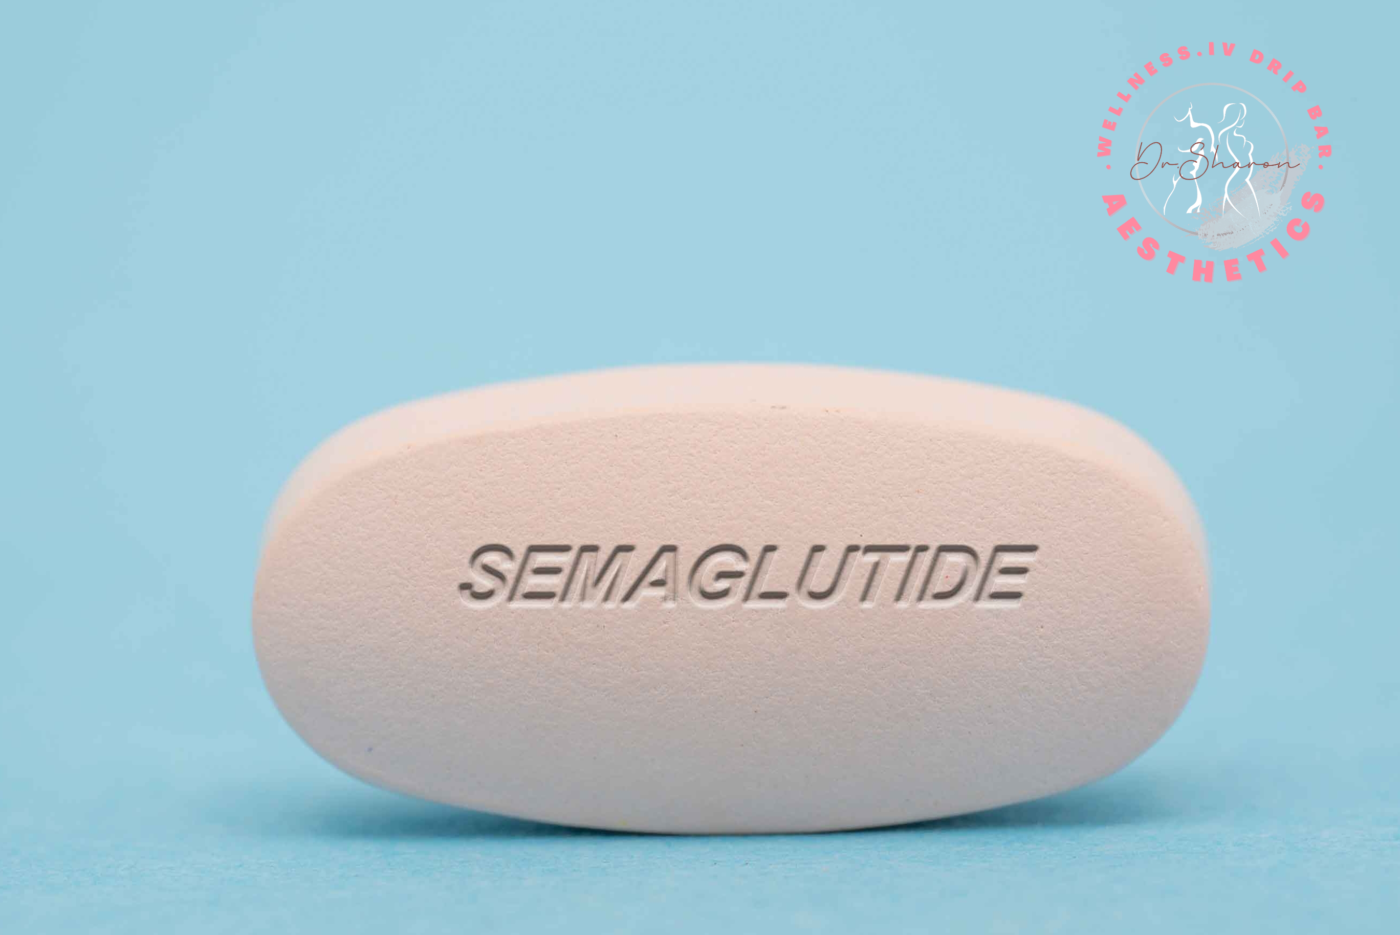 semaglutide weight loss pill